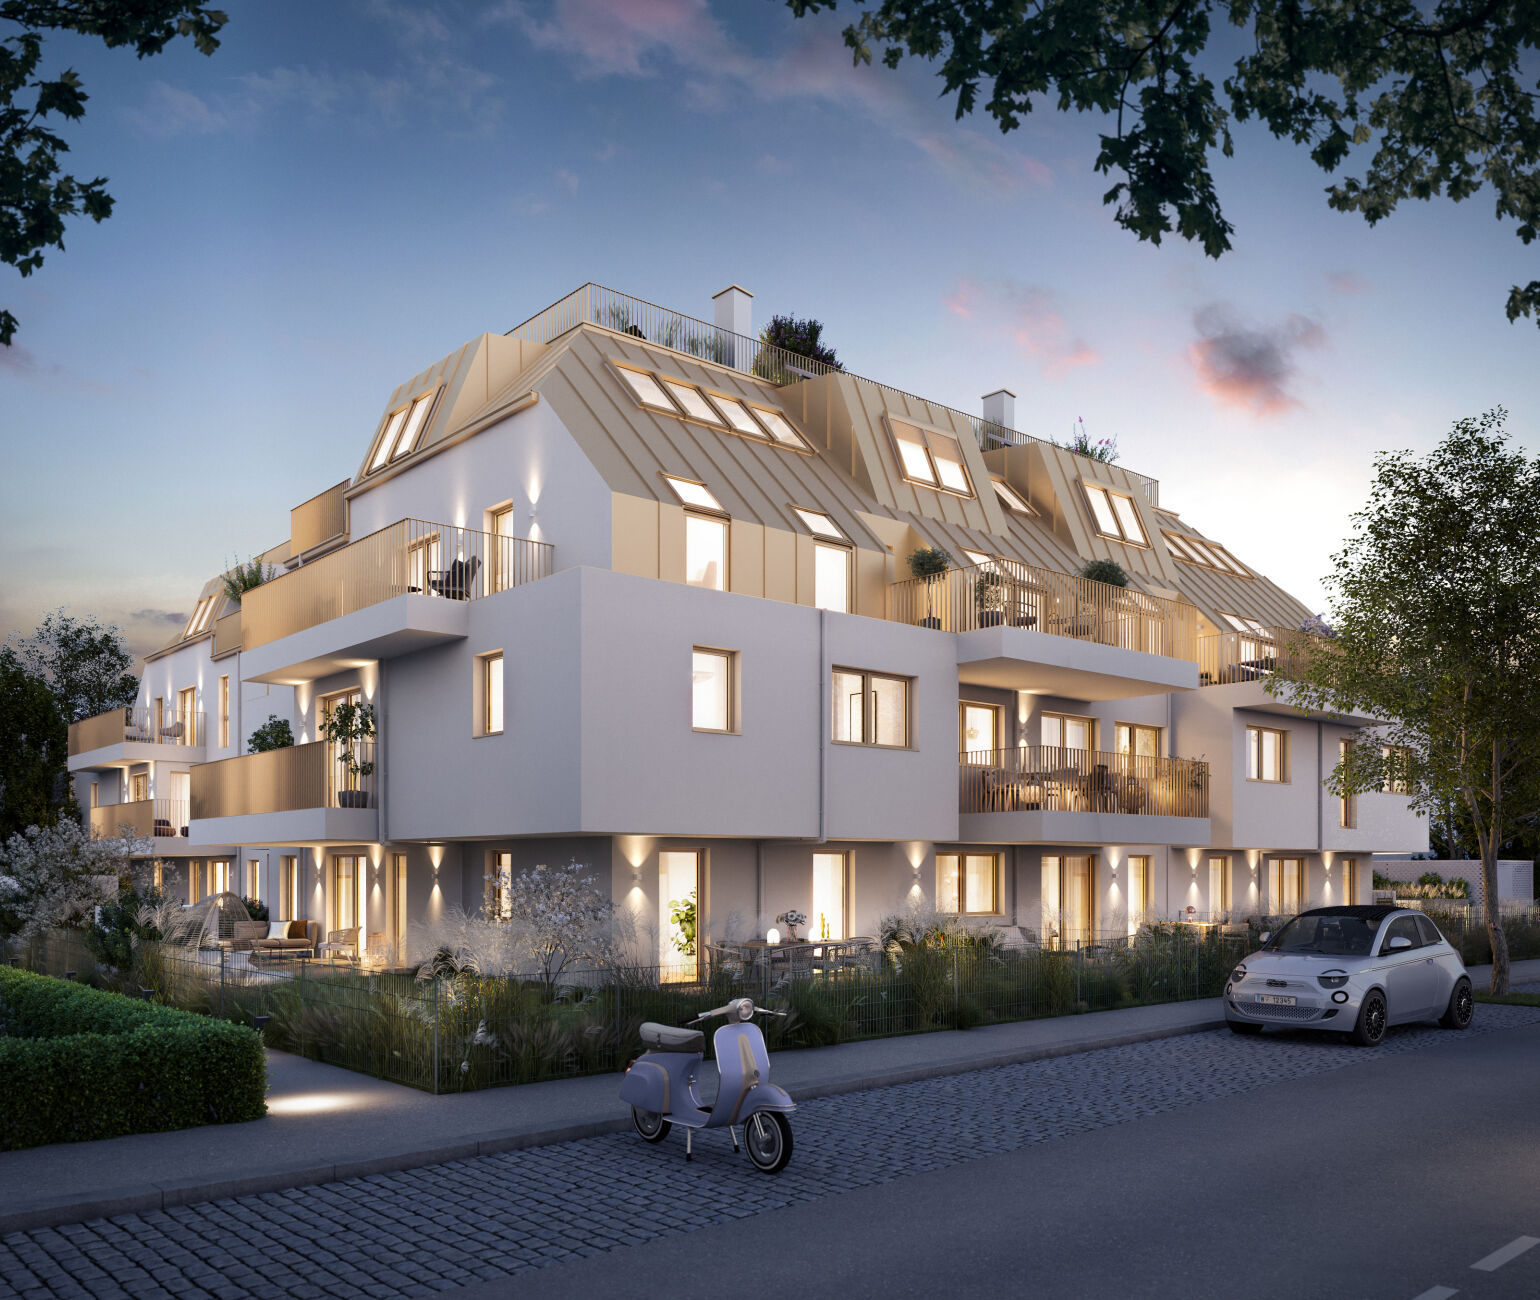 THE LIBERTY in Wien Kagran: 36 Eigentumswohnungen und 2 Townhouses werden bis 2025 am Gelände Am Freihof entwickelt. 